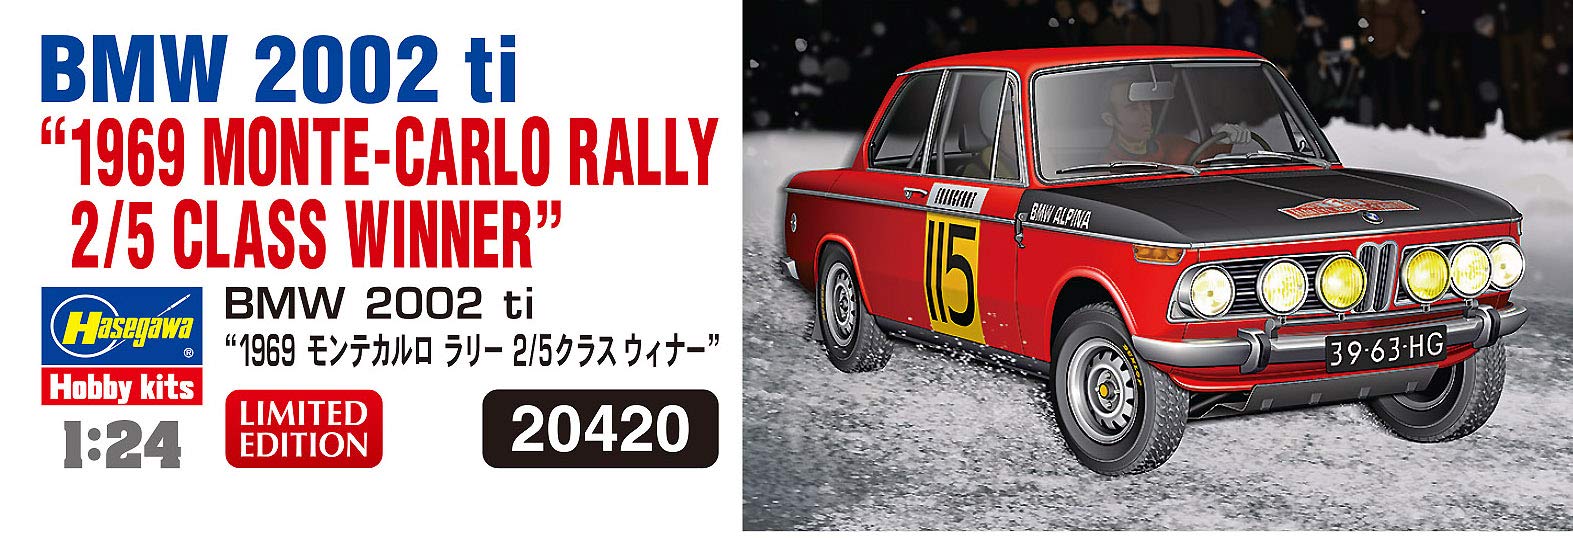 HASEGAWA 20420 Bmw 2002 Ti 1969 Monte Carlo Rally Class Winner 1/24 Scale Kit